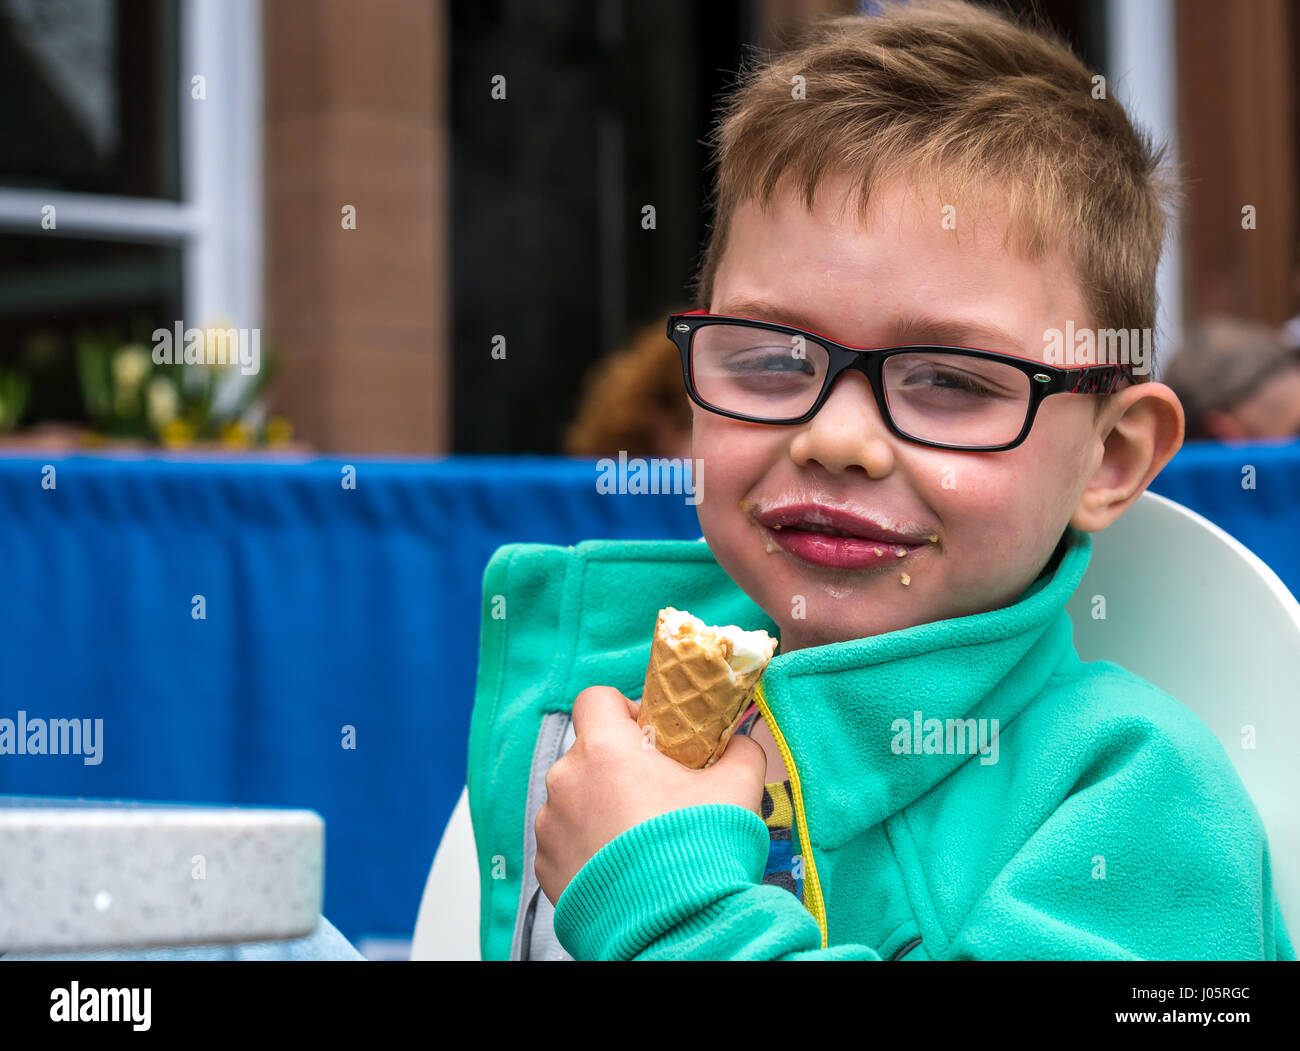 Junge lächelnd Eis essen Kegel mit glücklichen zufriedenen Ausdruck, Schottland, Großbritannien Stockfoto